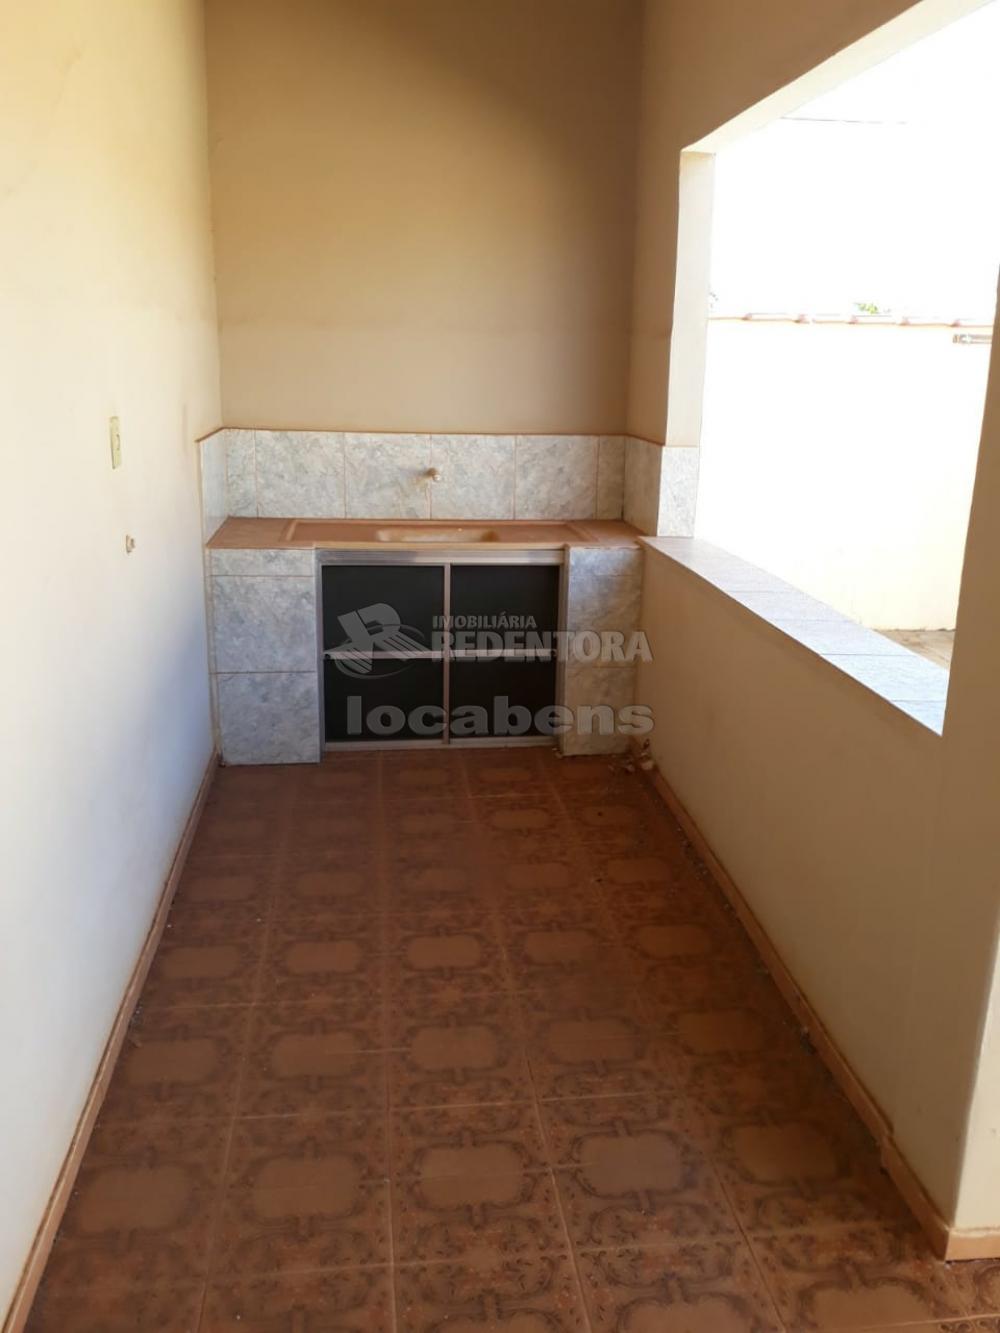 Comprar Casa / Padrão em Uchoa apenas R$ 230.000,00 - Foto 3